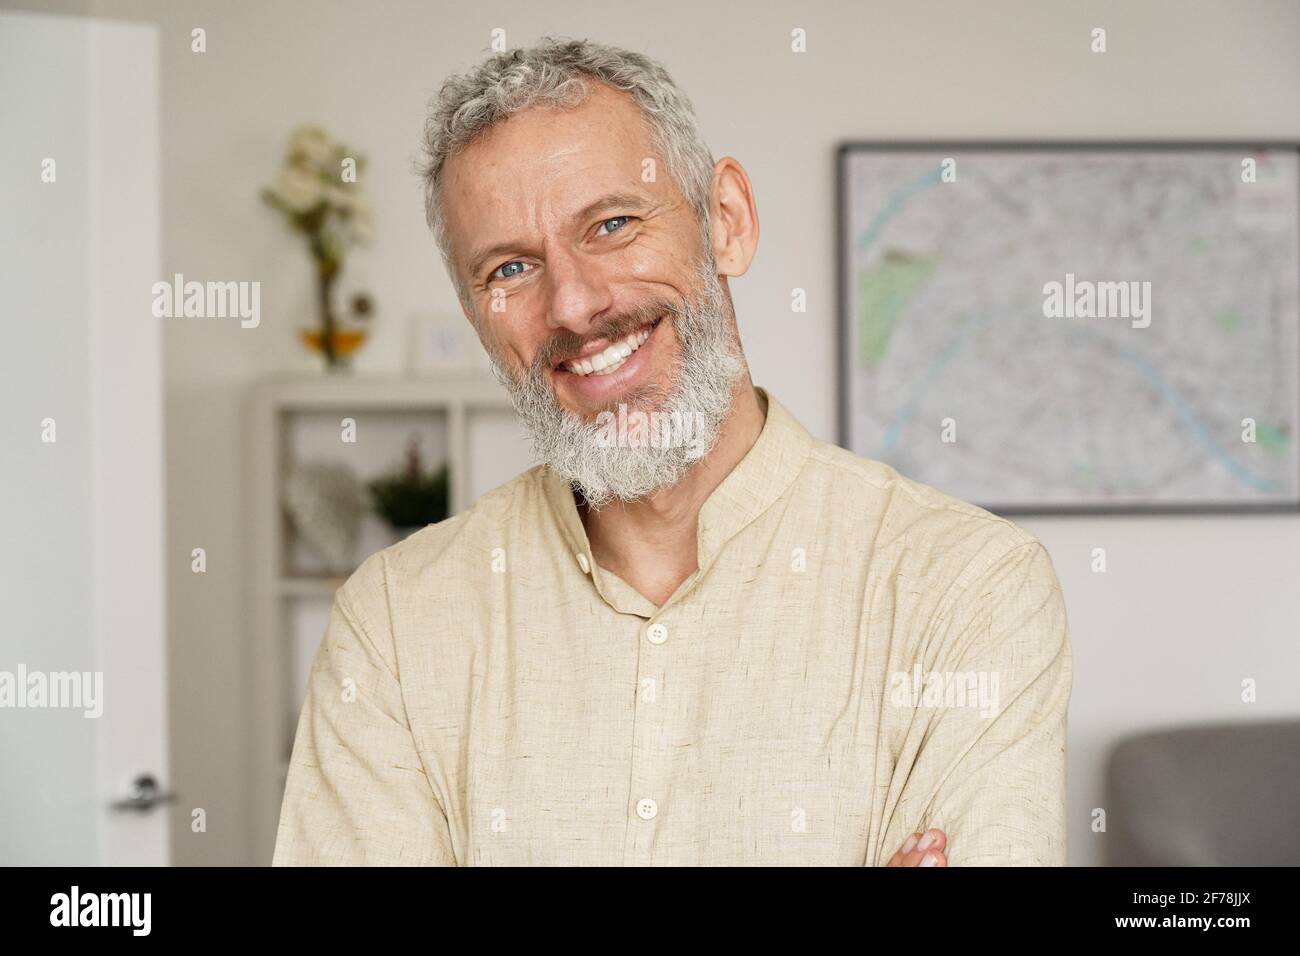 Lächelnder, reifer bärtiger Mann, der zu Hause auf die Kamera schaut, ein Kopfbildnis. Stockfoto